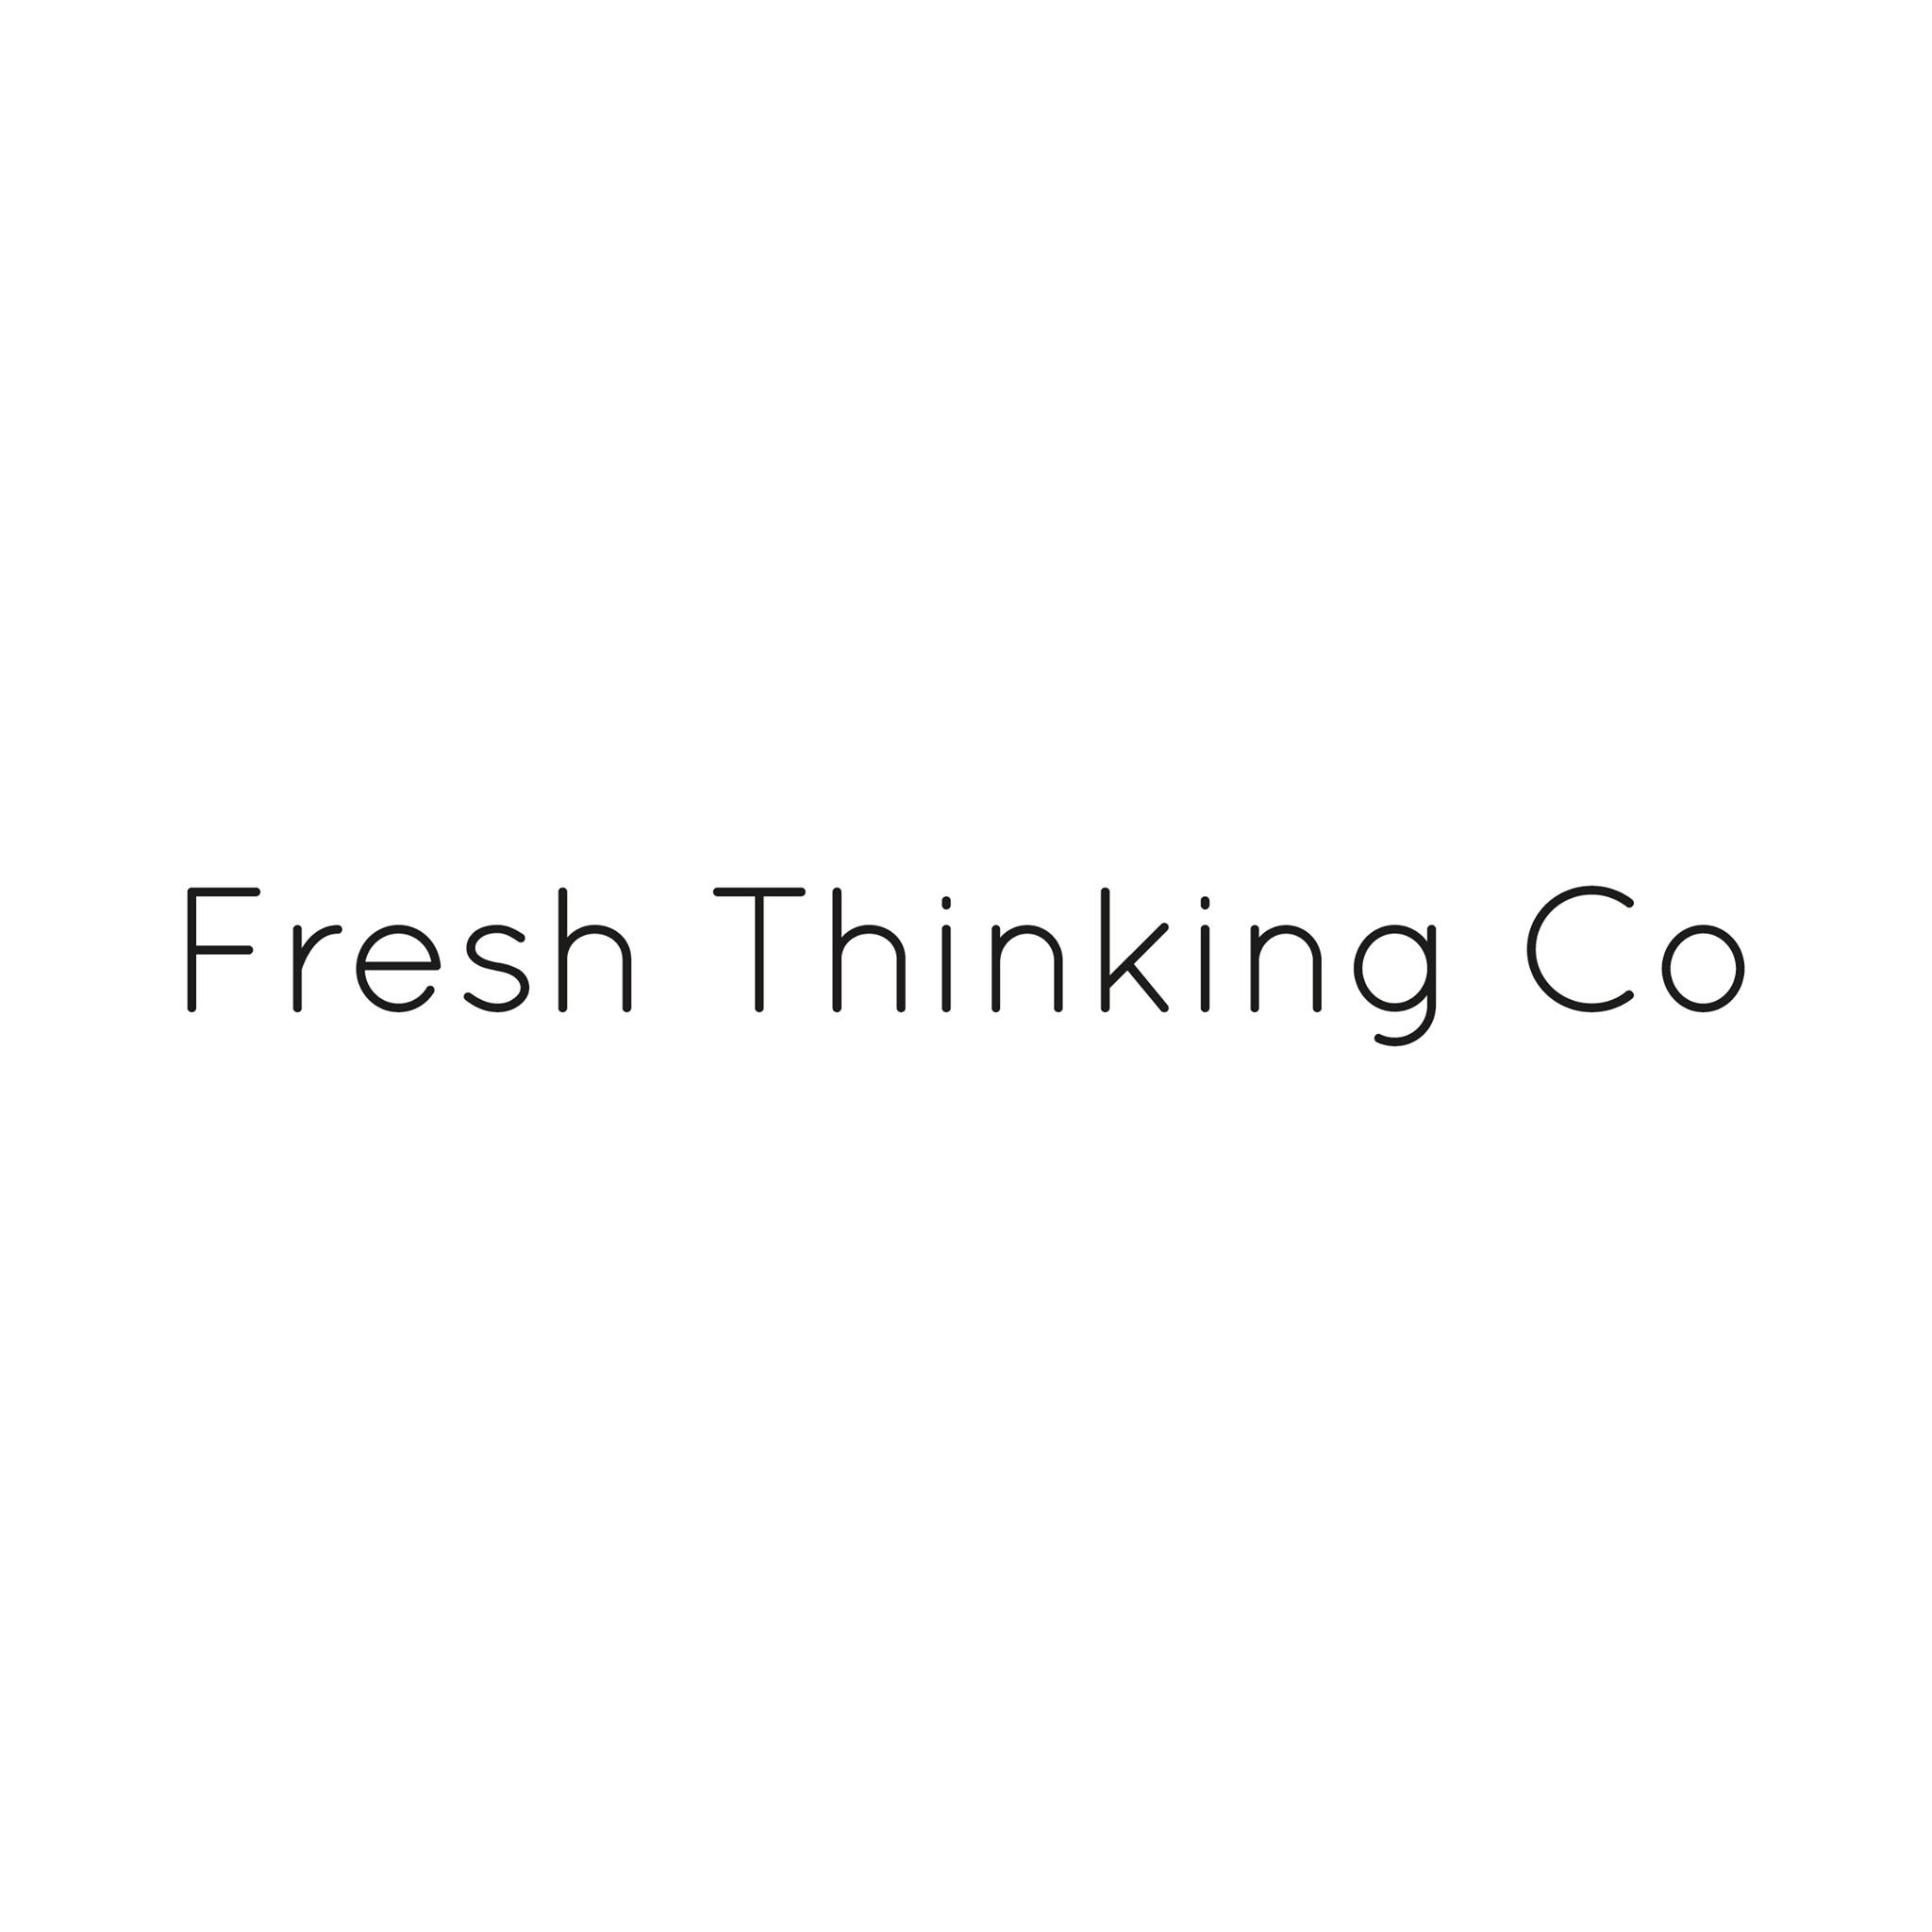 Fresh Thinking Co